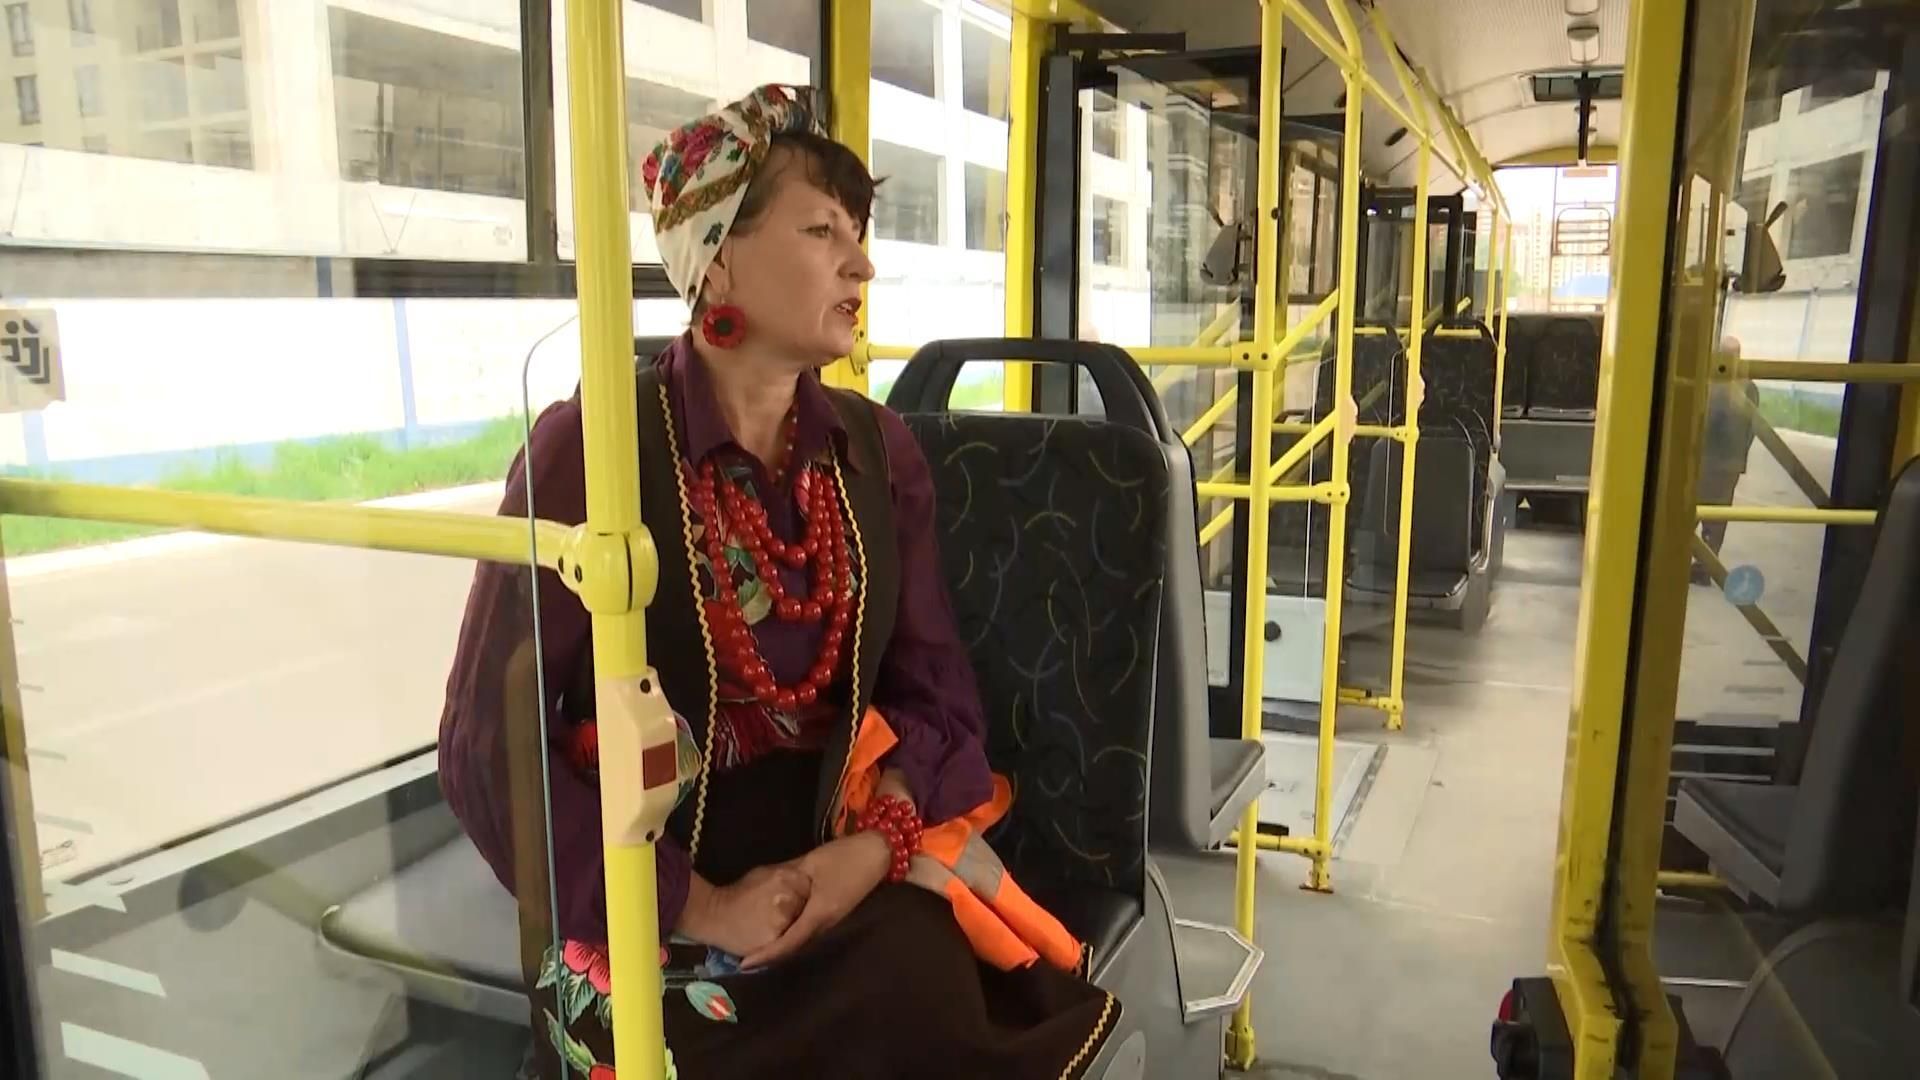 Патриотический транспорт: водитель ежедневно украшает троллейбус вышитыми вышитыми рушниками